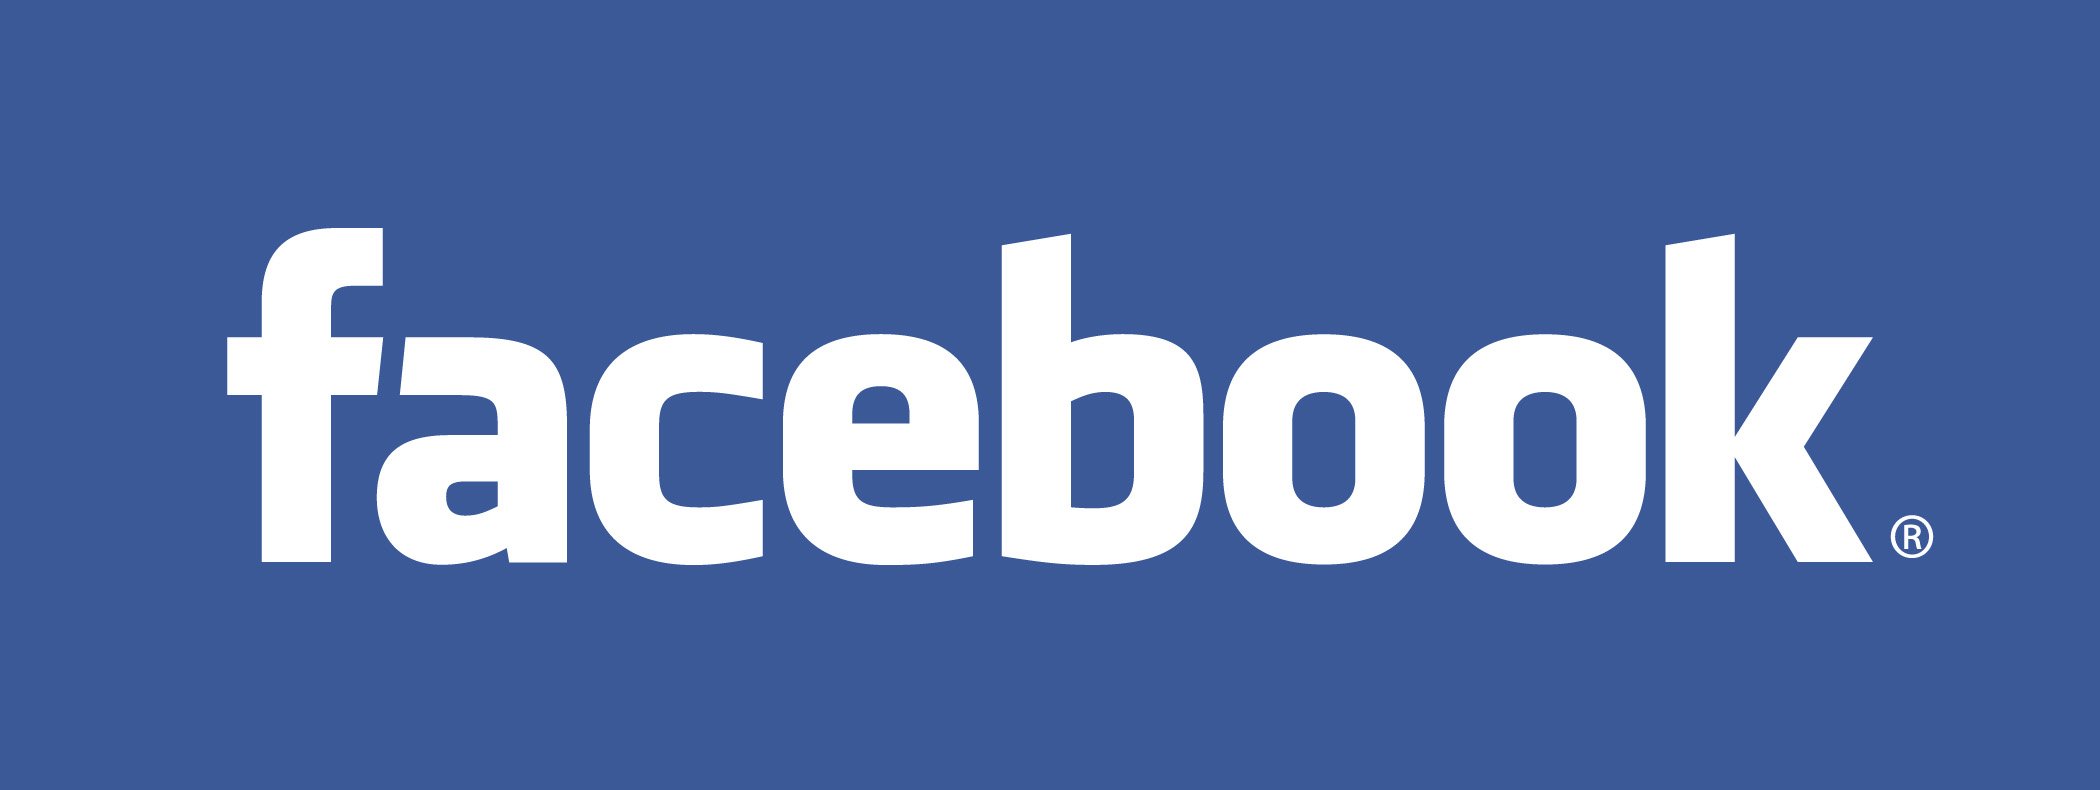 facebook_ringtone_pop.m4a - Facebook - Неизвест. альбом — Facebook | Last.fm